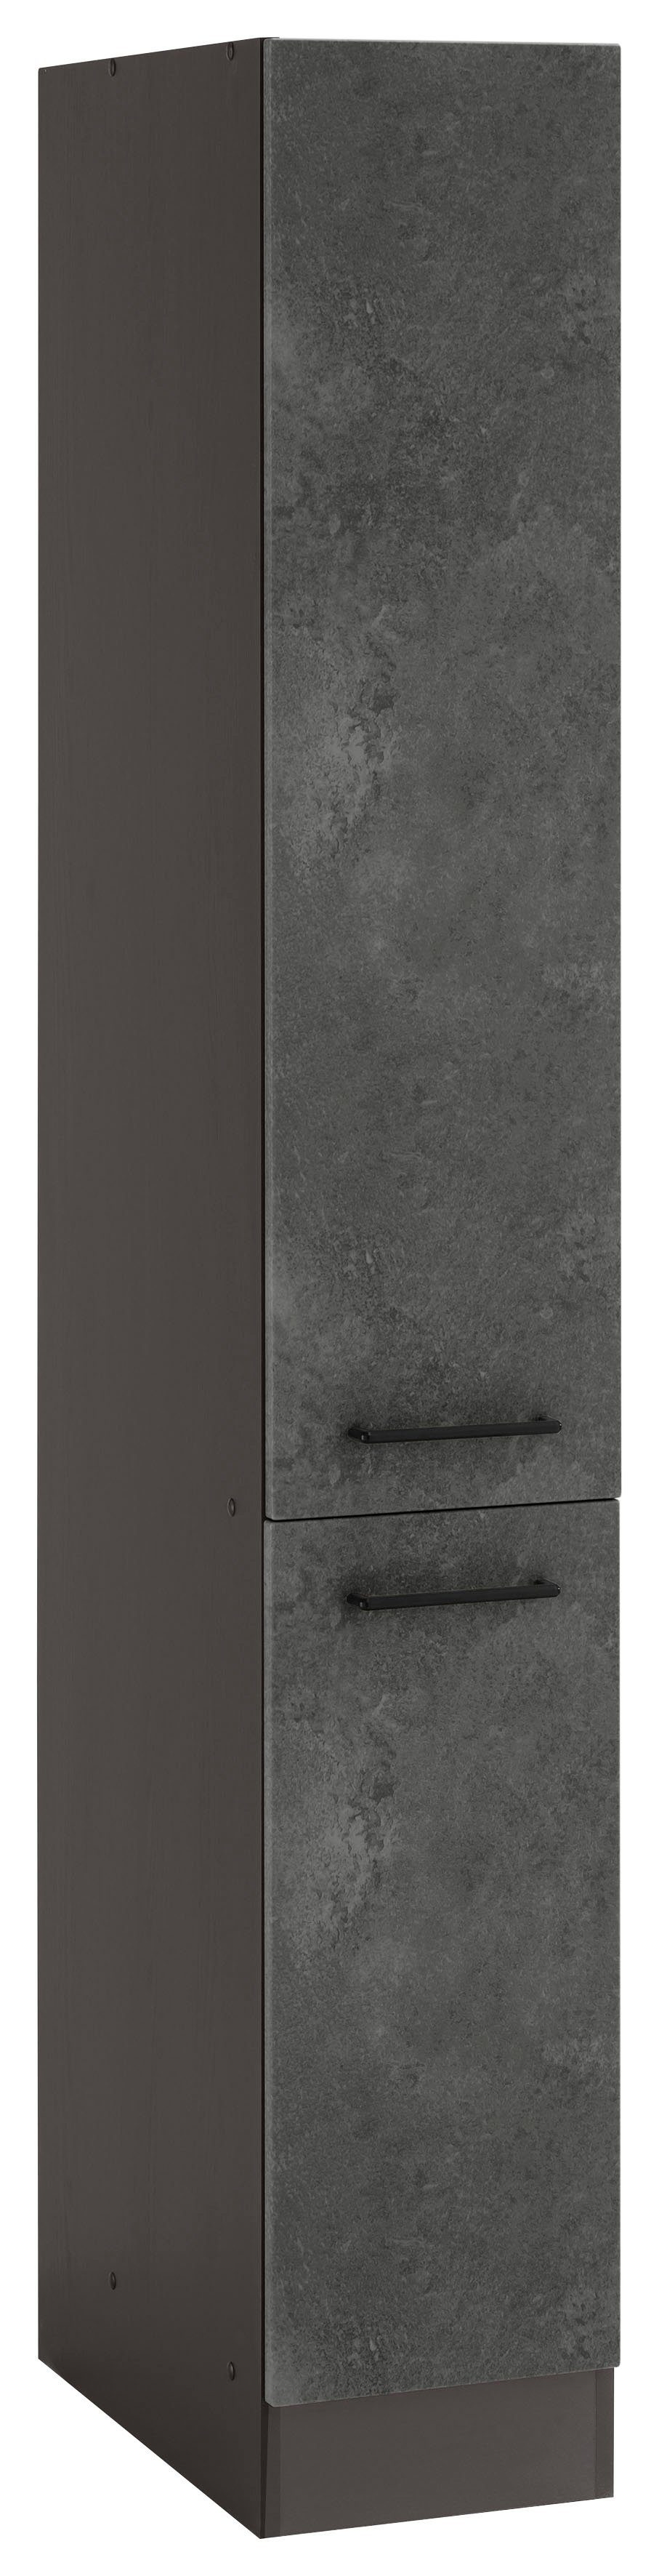 HELD MÖBEL Apothekerschrank Tulsa 30 cm breit, 200 cm hoch, mit 2 Auszügen, Metallgriff, MDF Front betonfarben dunkel | grafit